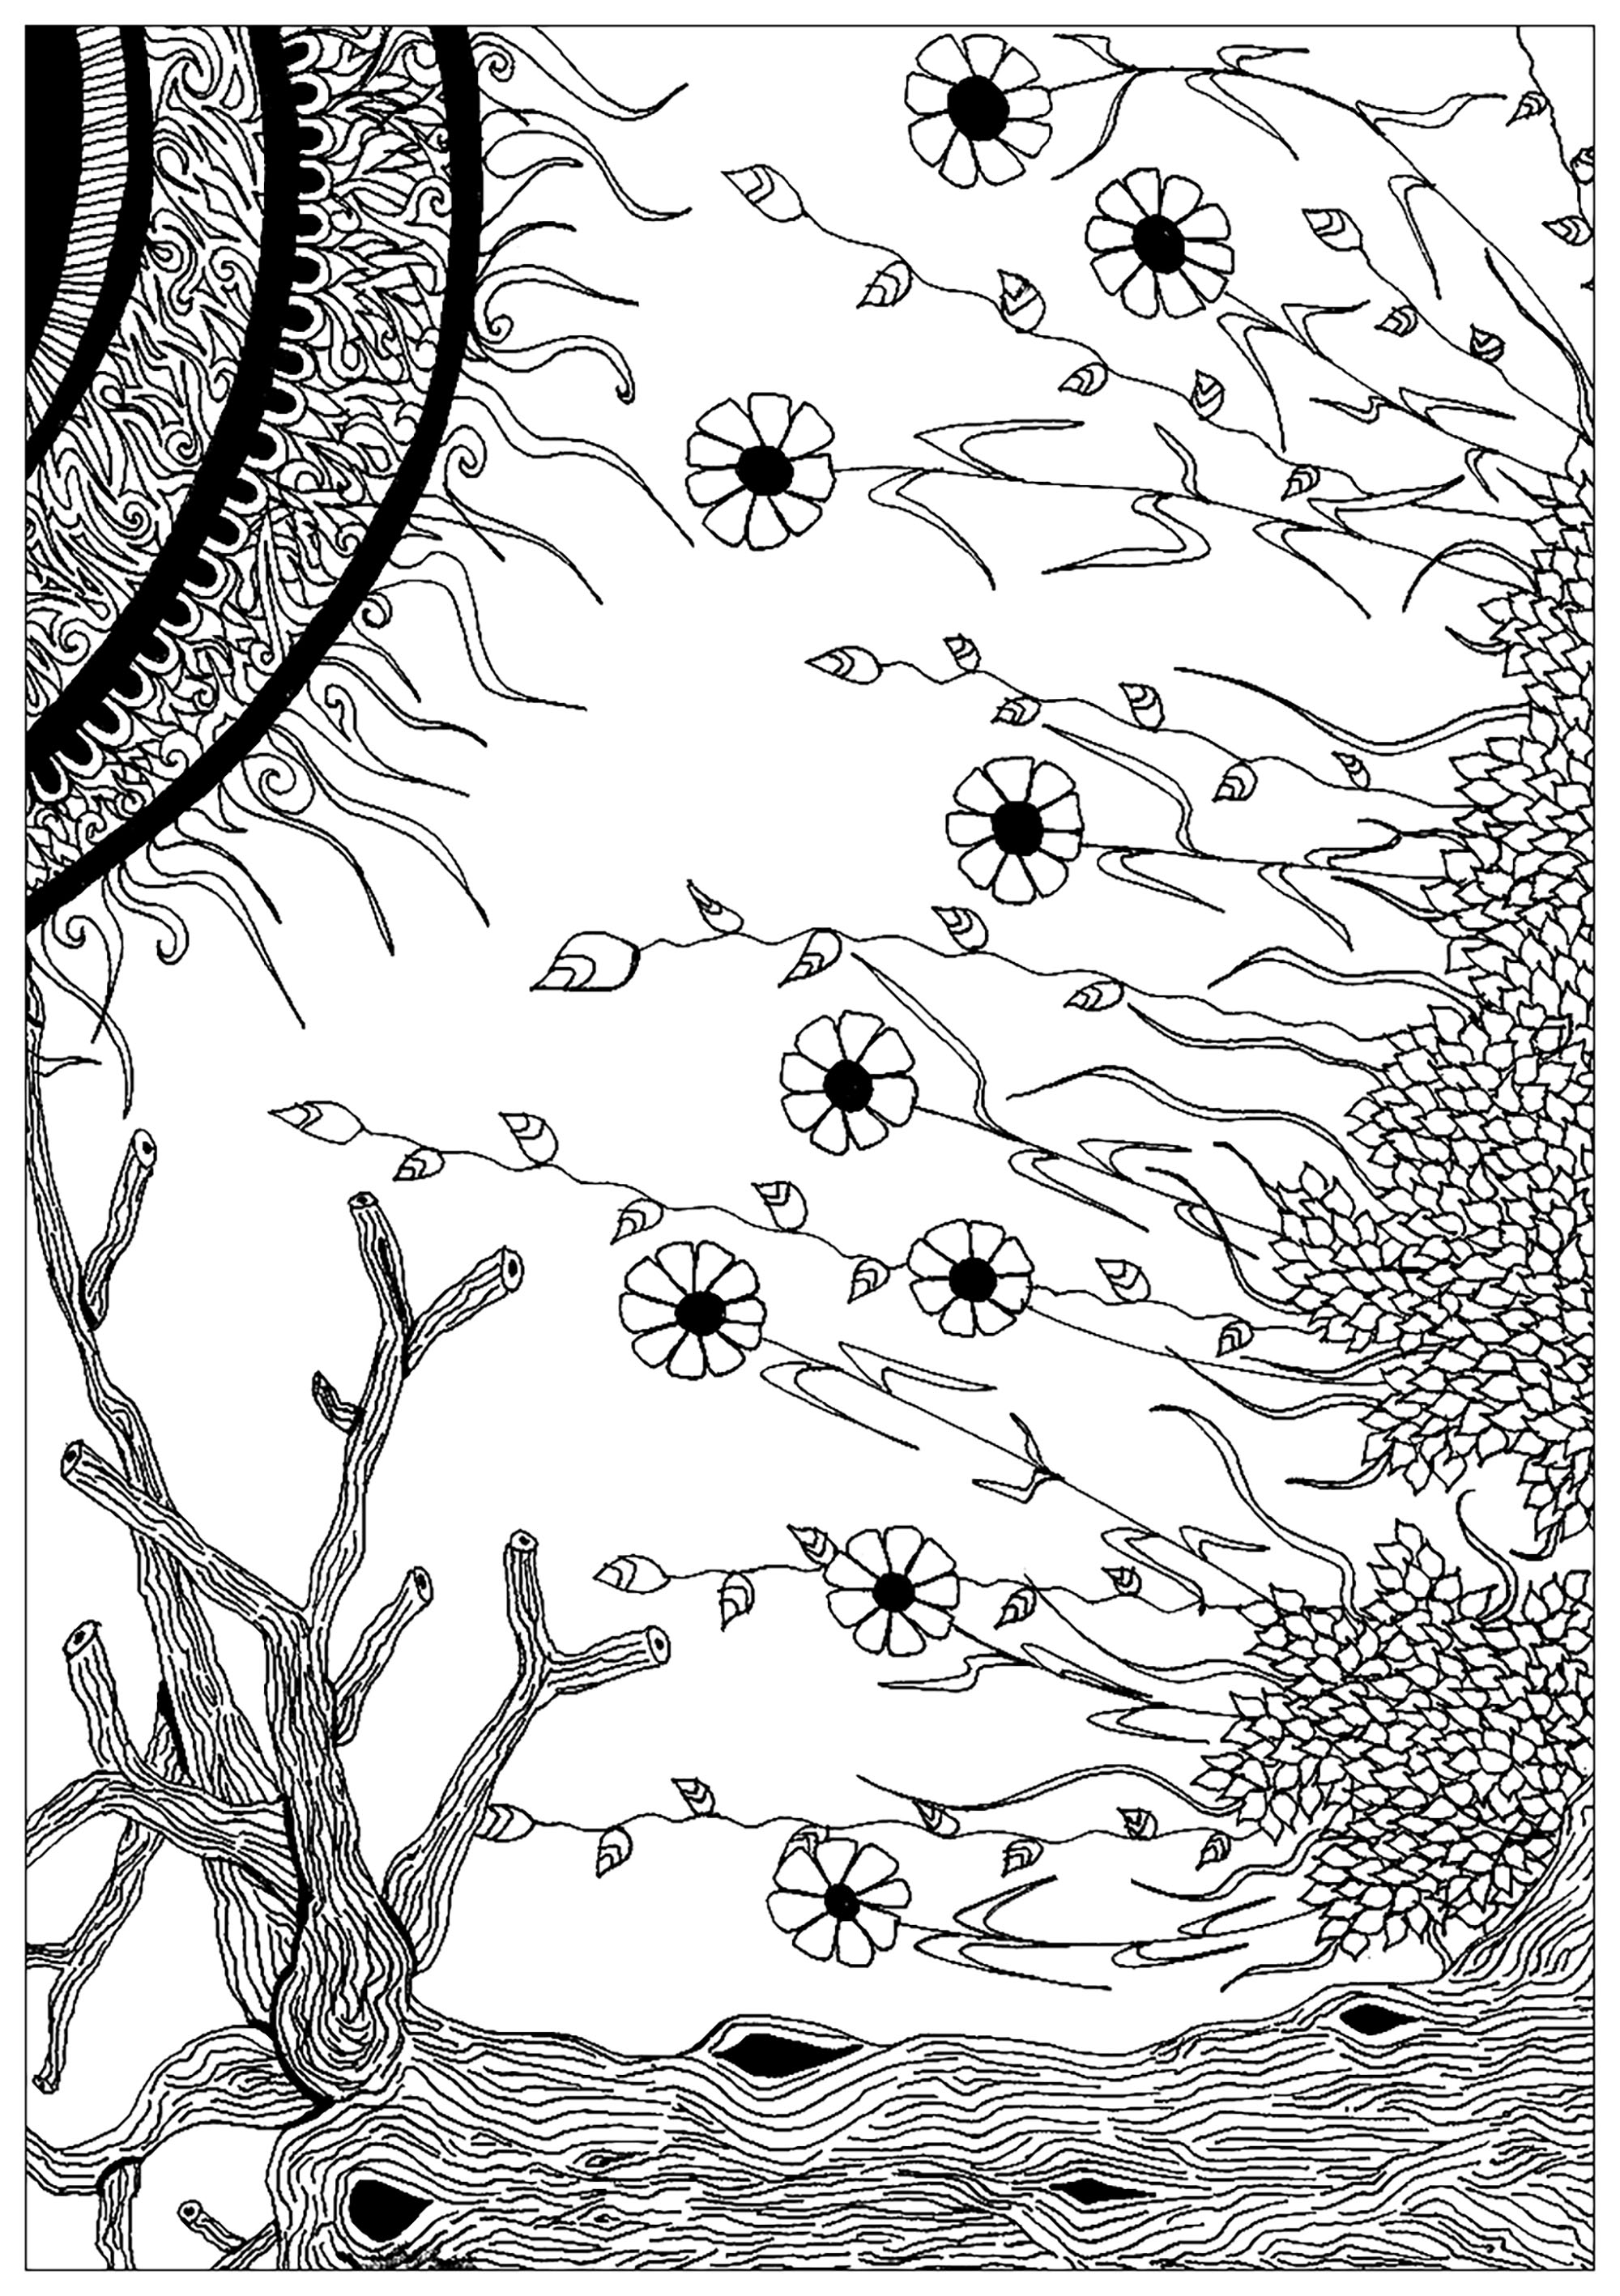 Aus pflanzlichen Elementen zusammengesetzte Zeichnung, die das Zusammentreffen von Spermien und einer Eizelle darstellt